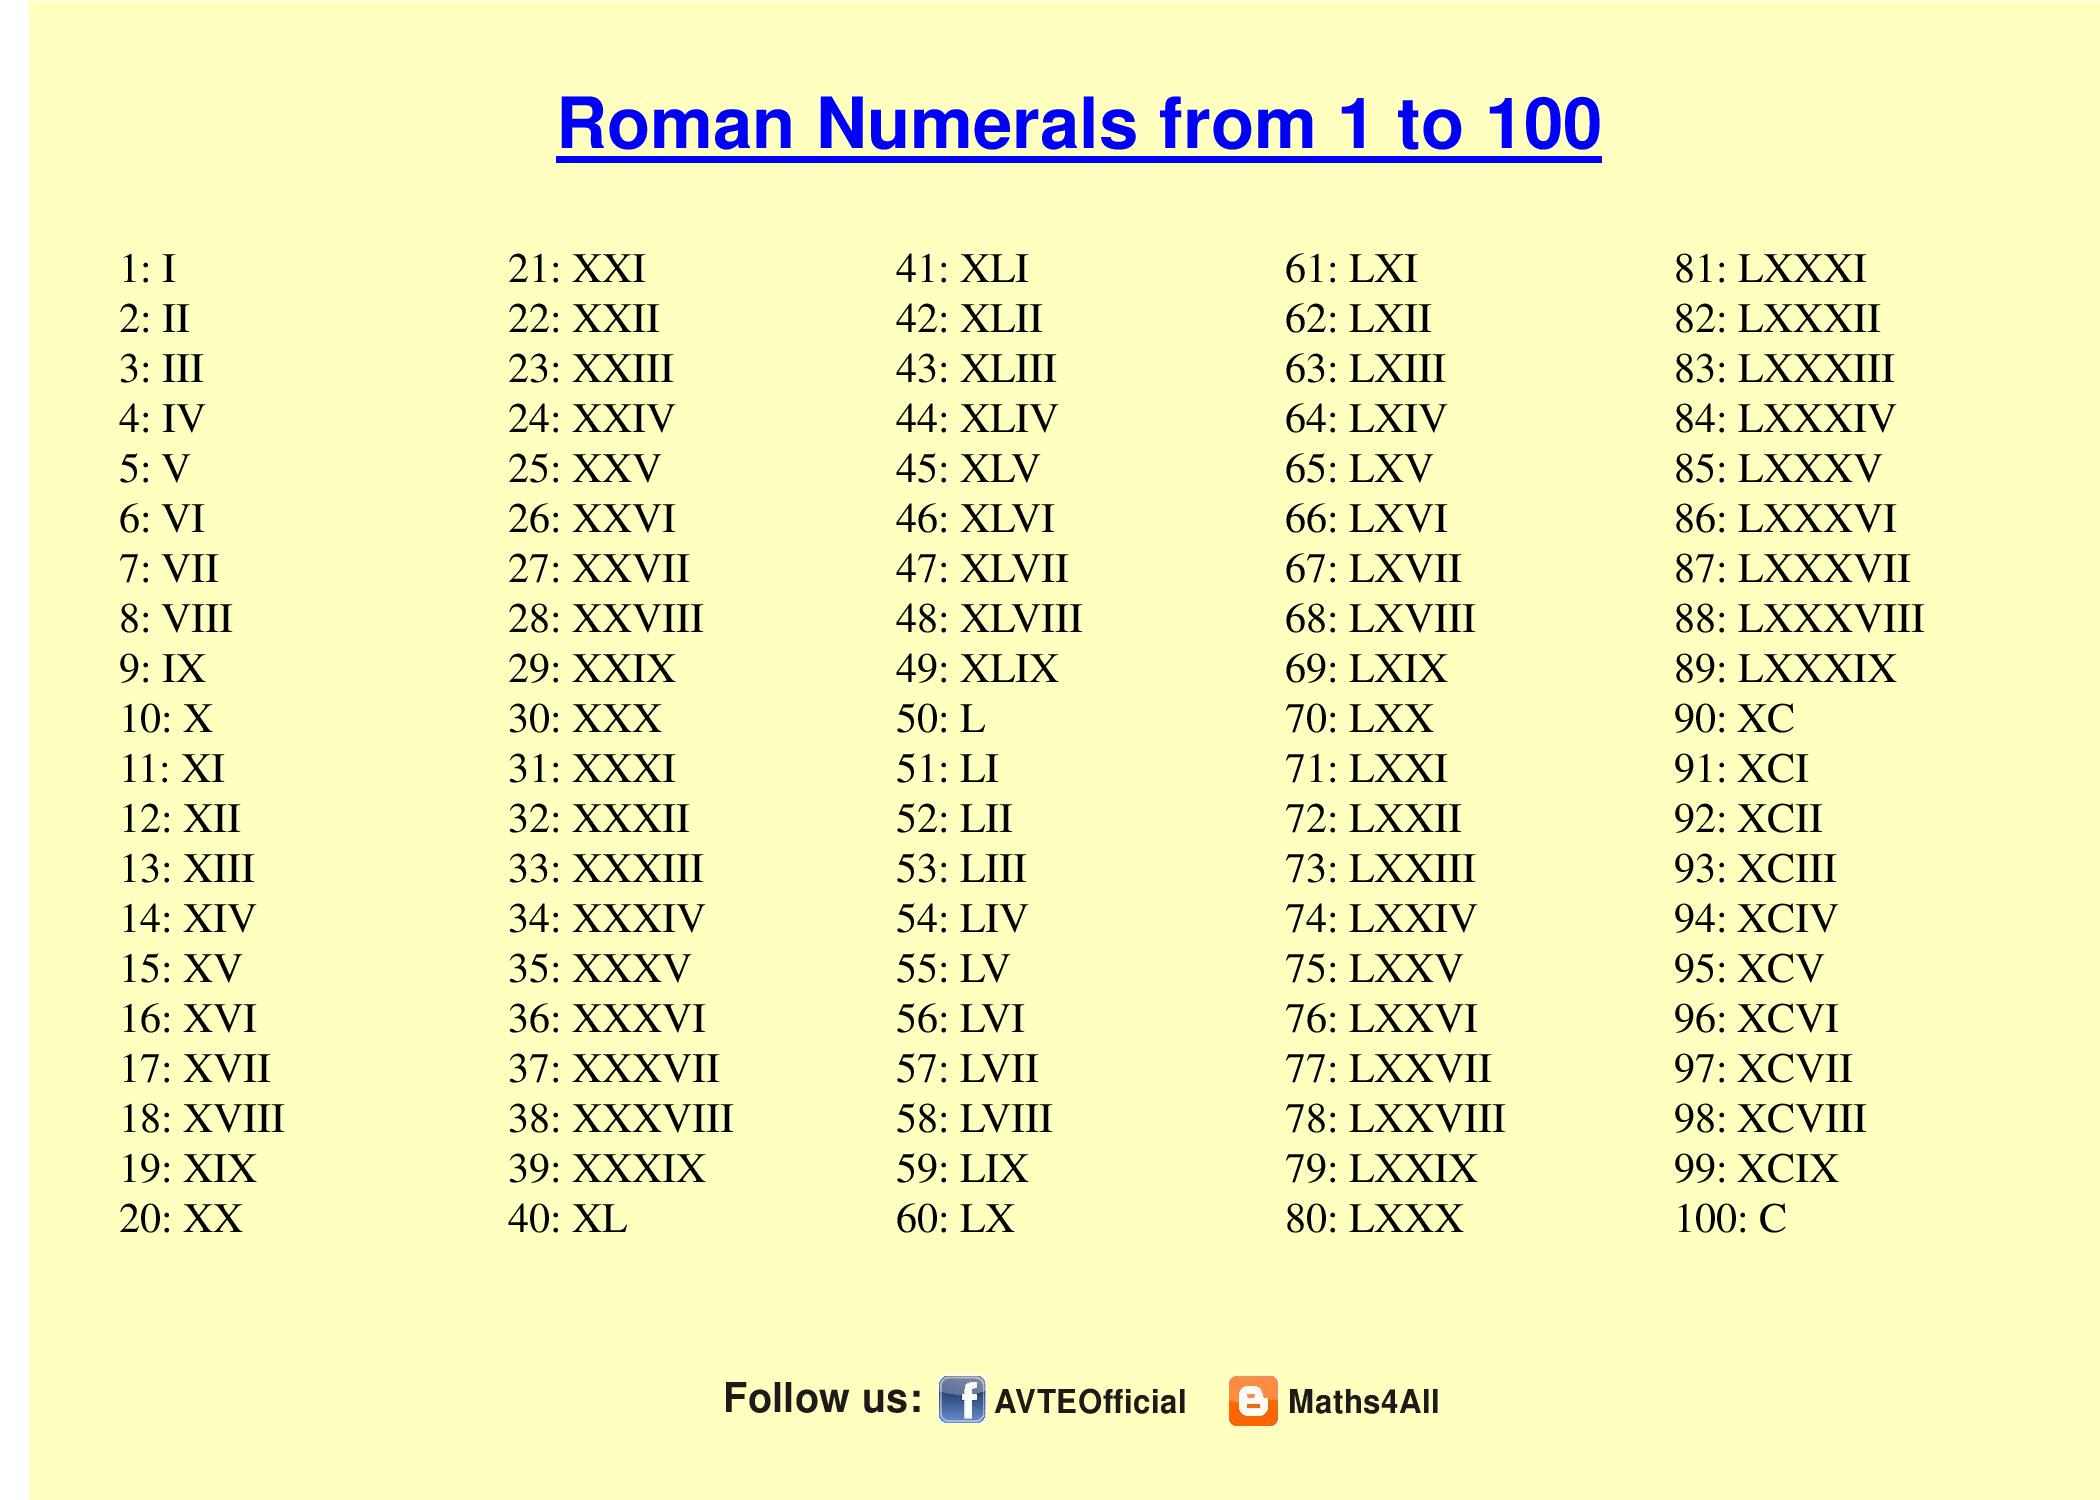 Сто лет какое число. Римские 1 до 100. Арабские и римские цифры от1 до 100. Римские цифры с переводом на русские цифры от 1-100. Таблица латинских цифр от 1 до 100.